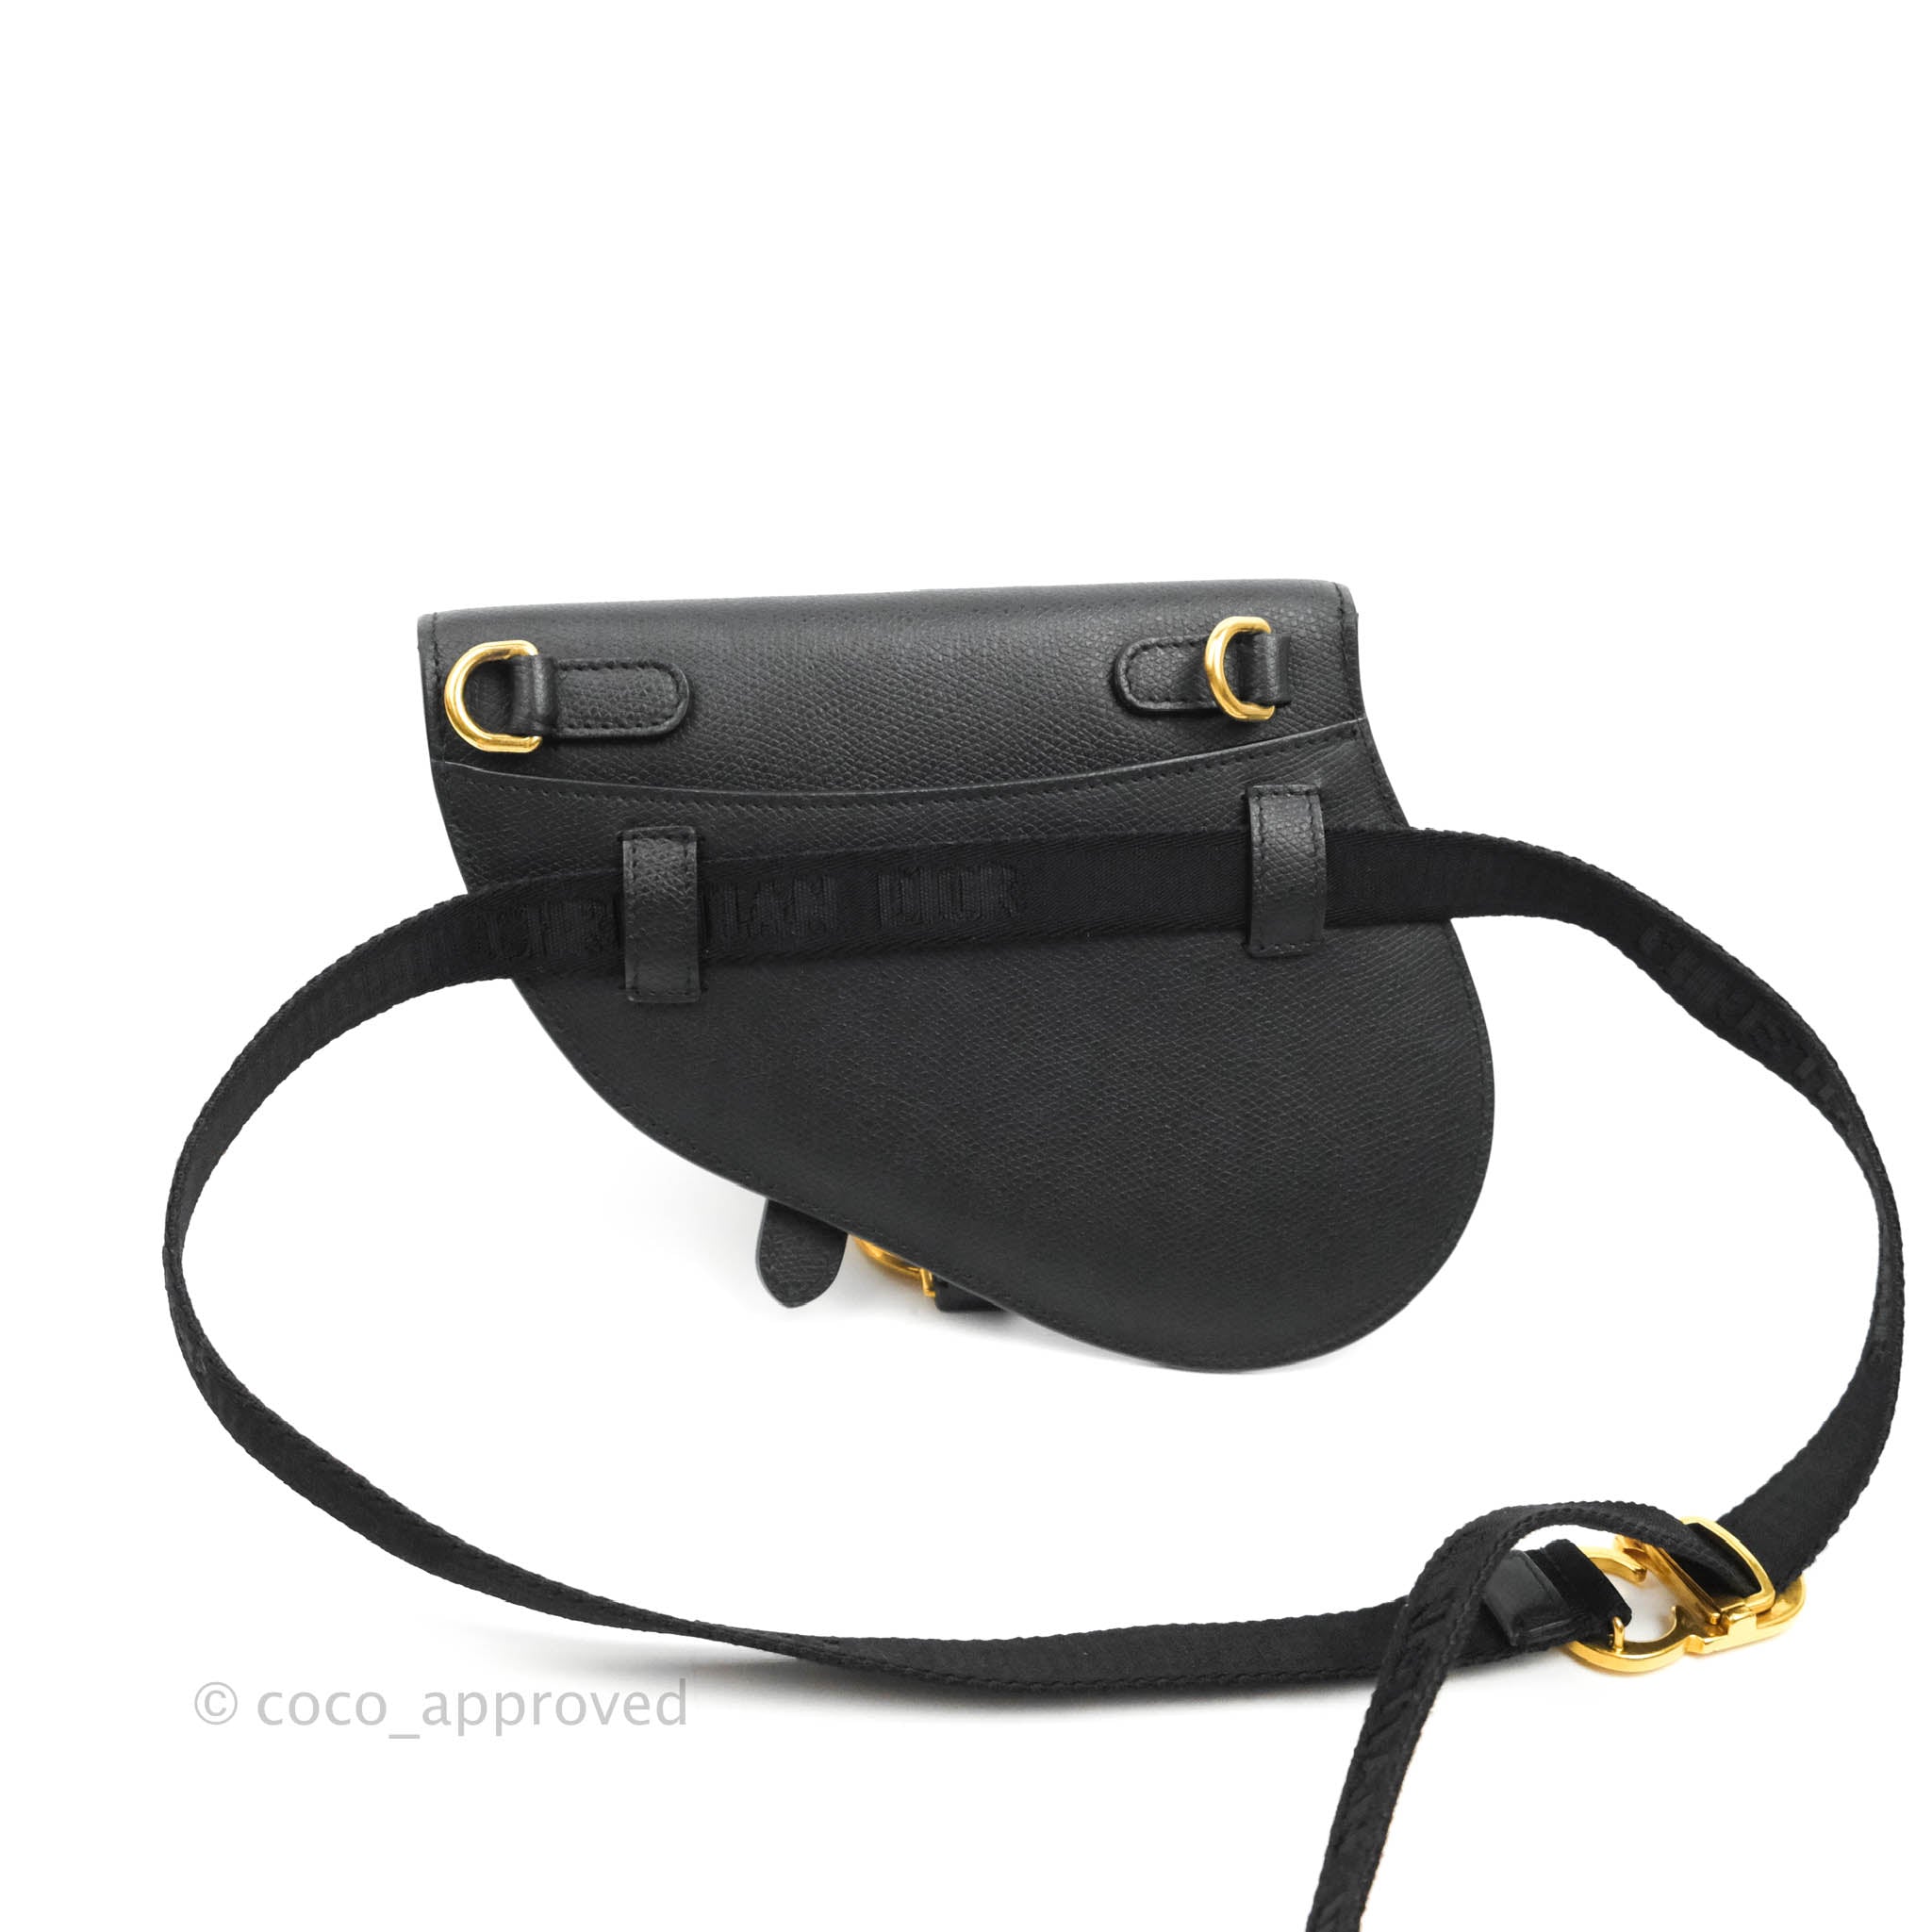 Dior Saddle Belt Bag Calfskin Blush in Calfskin with Aged Gold-tone - US